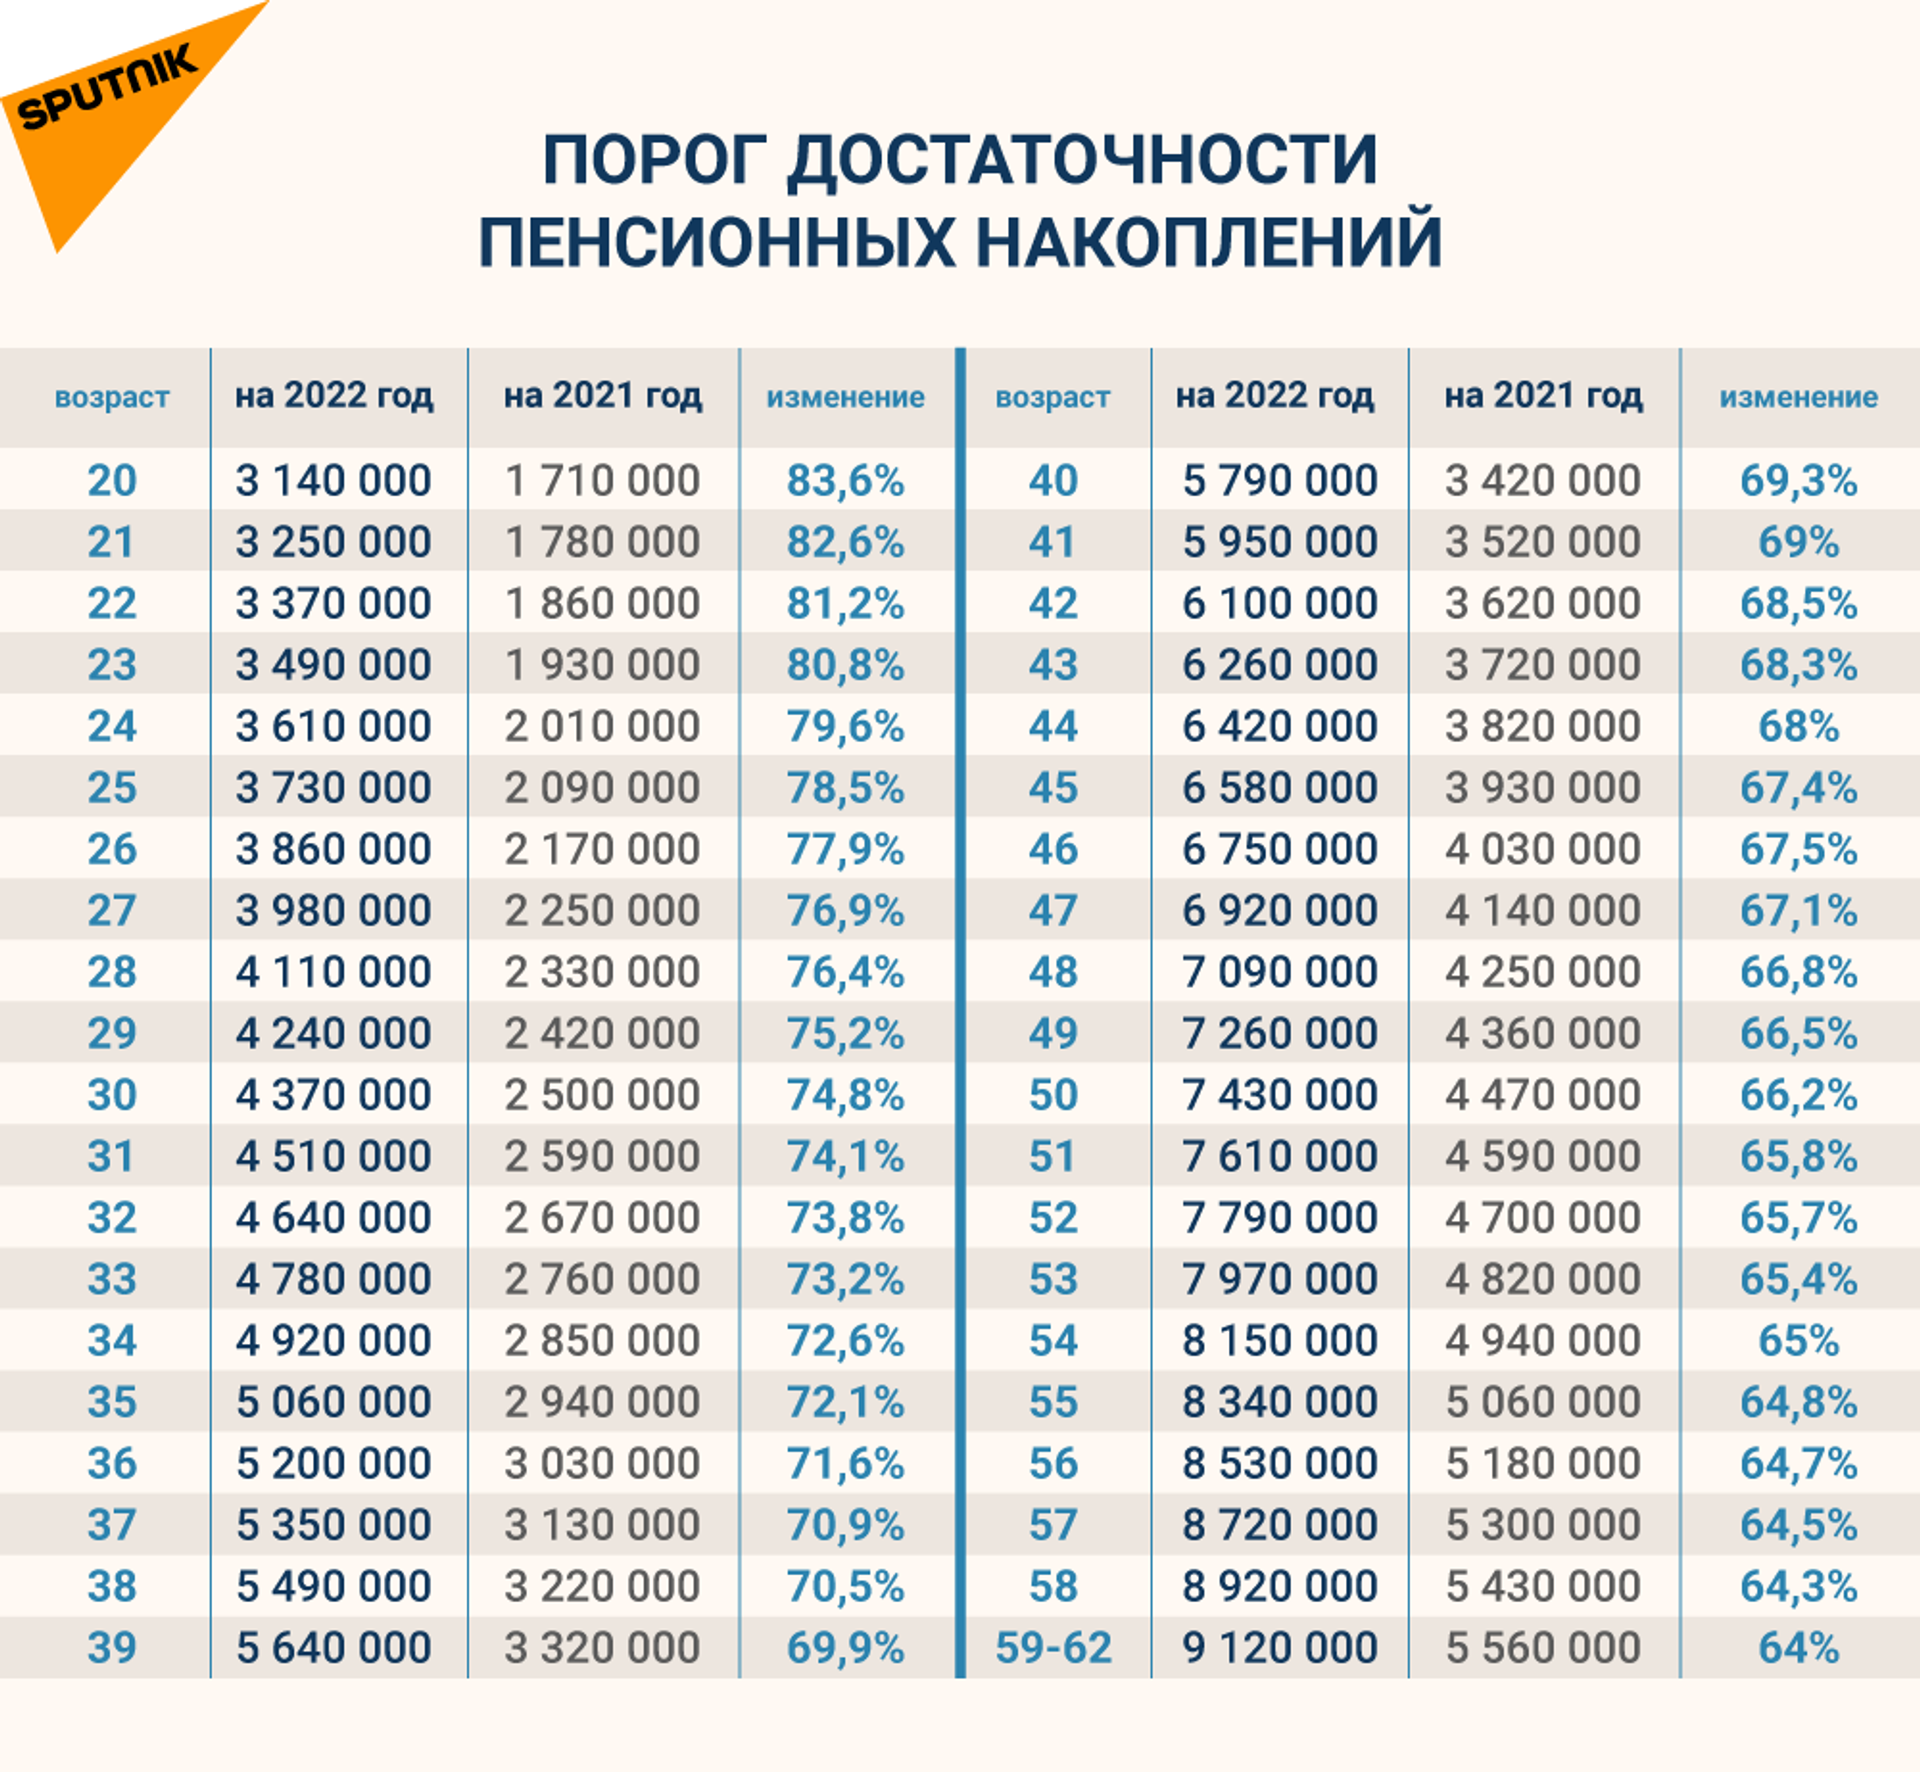 Как изменится порог достаточности пенсионных накоплений - 2021 и 2022 - Sputnik Казахстан, 1920, 11.03.2022